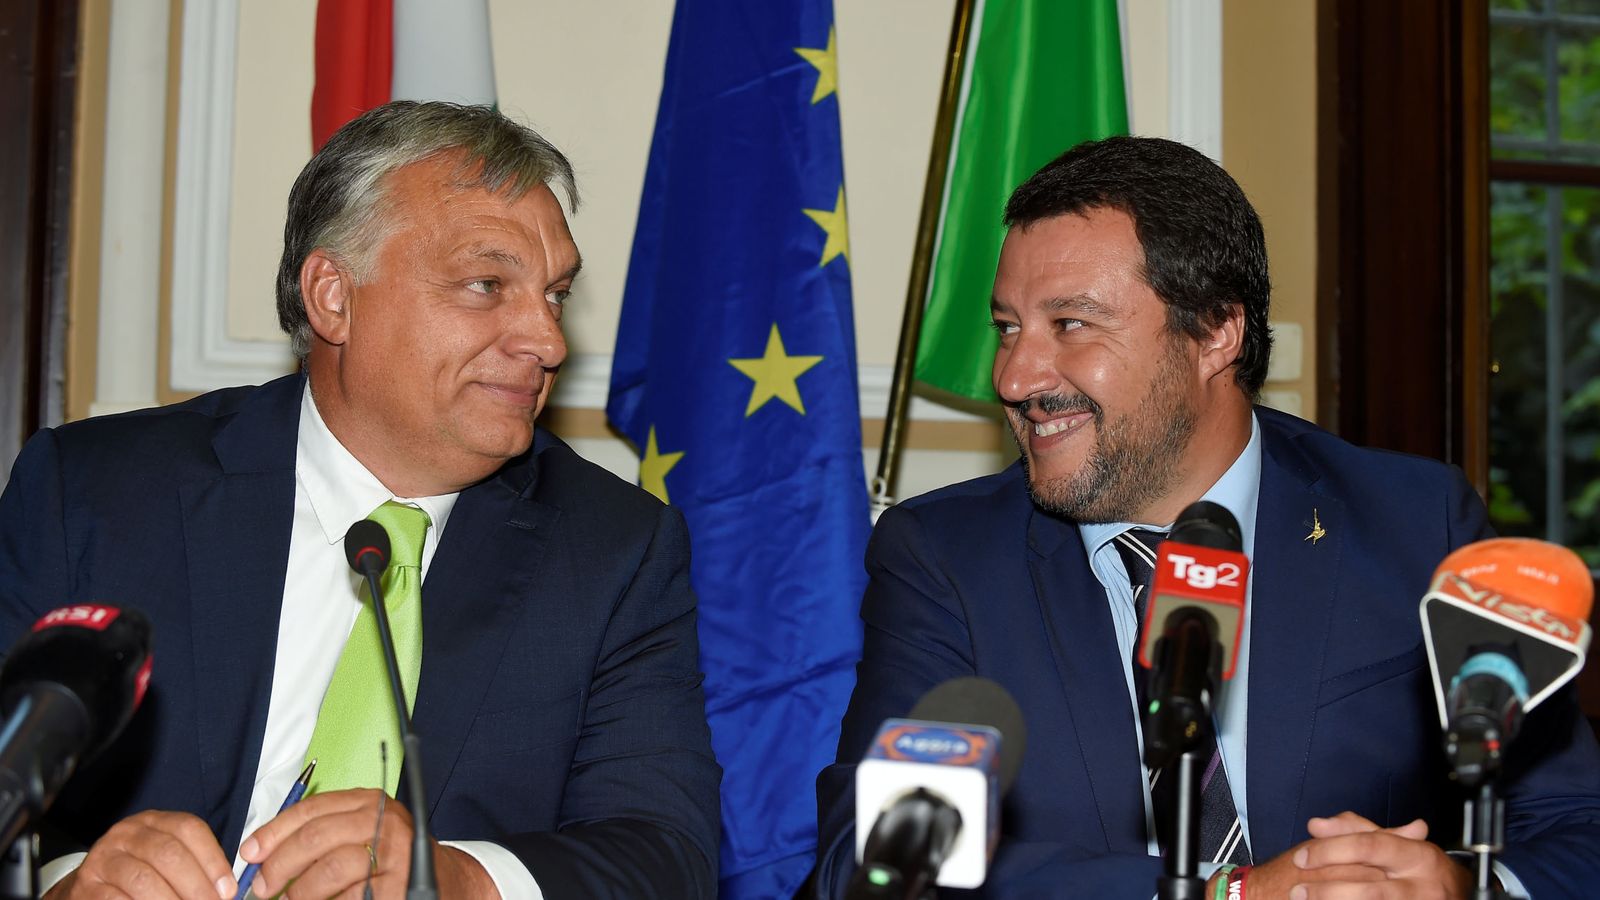 Foto: El ministro del Interior Matteo Salvini durante su encuentro con el primer ministro húngaro, Viktor Orban, en Milán. (Reuters)